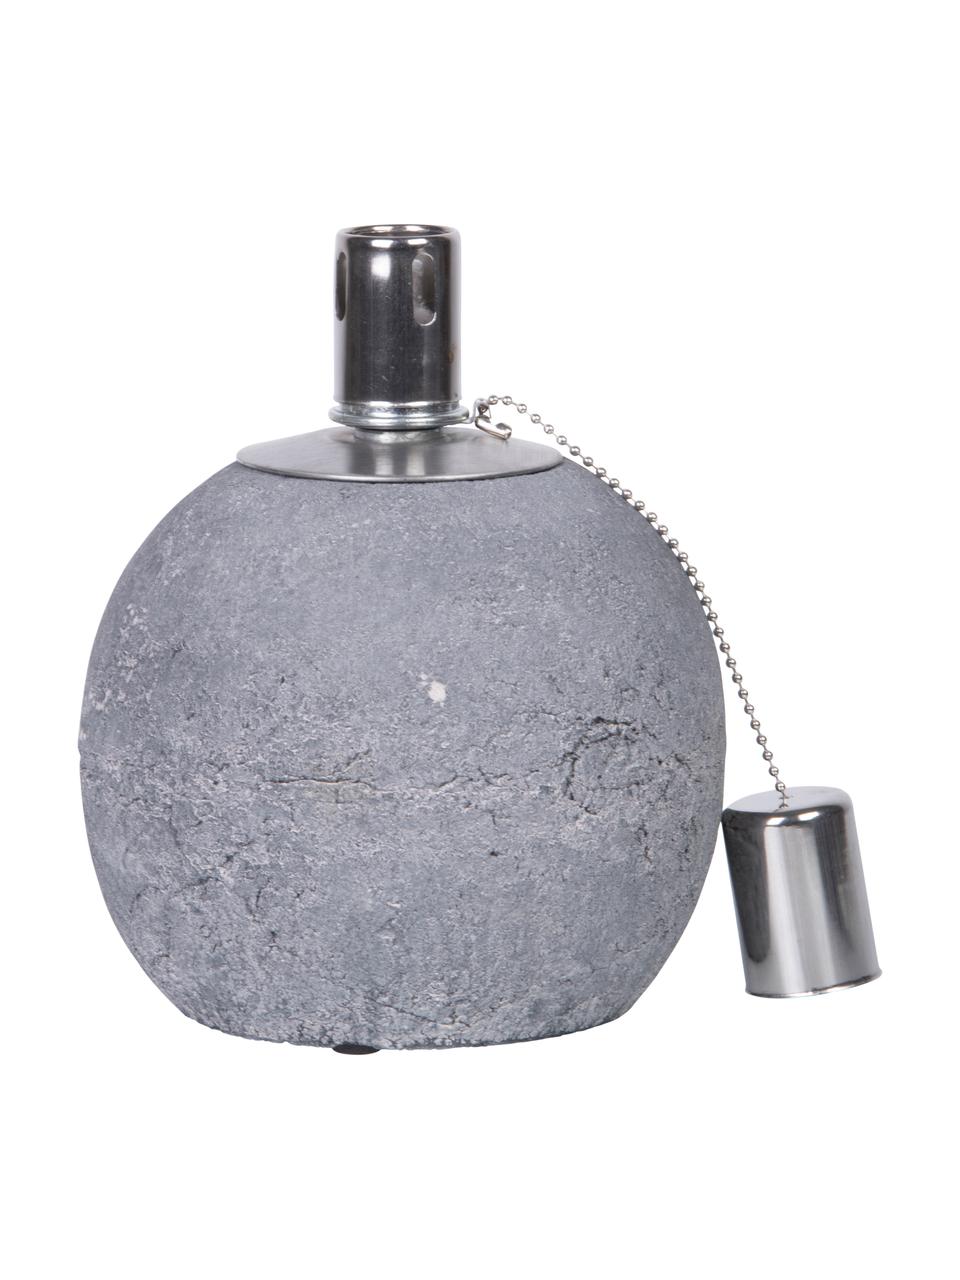 Lampada a olio in cemento Raw, Cemento, acciaio inossidabile, Grigio, argentato, Ø 14 x Alt. 17 cm